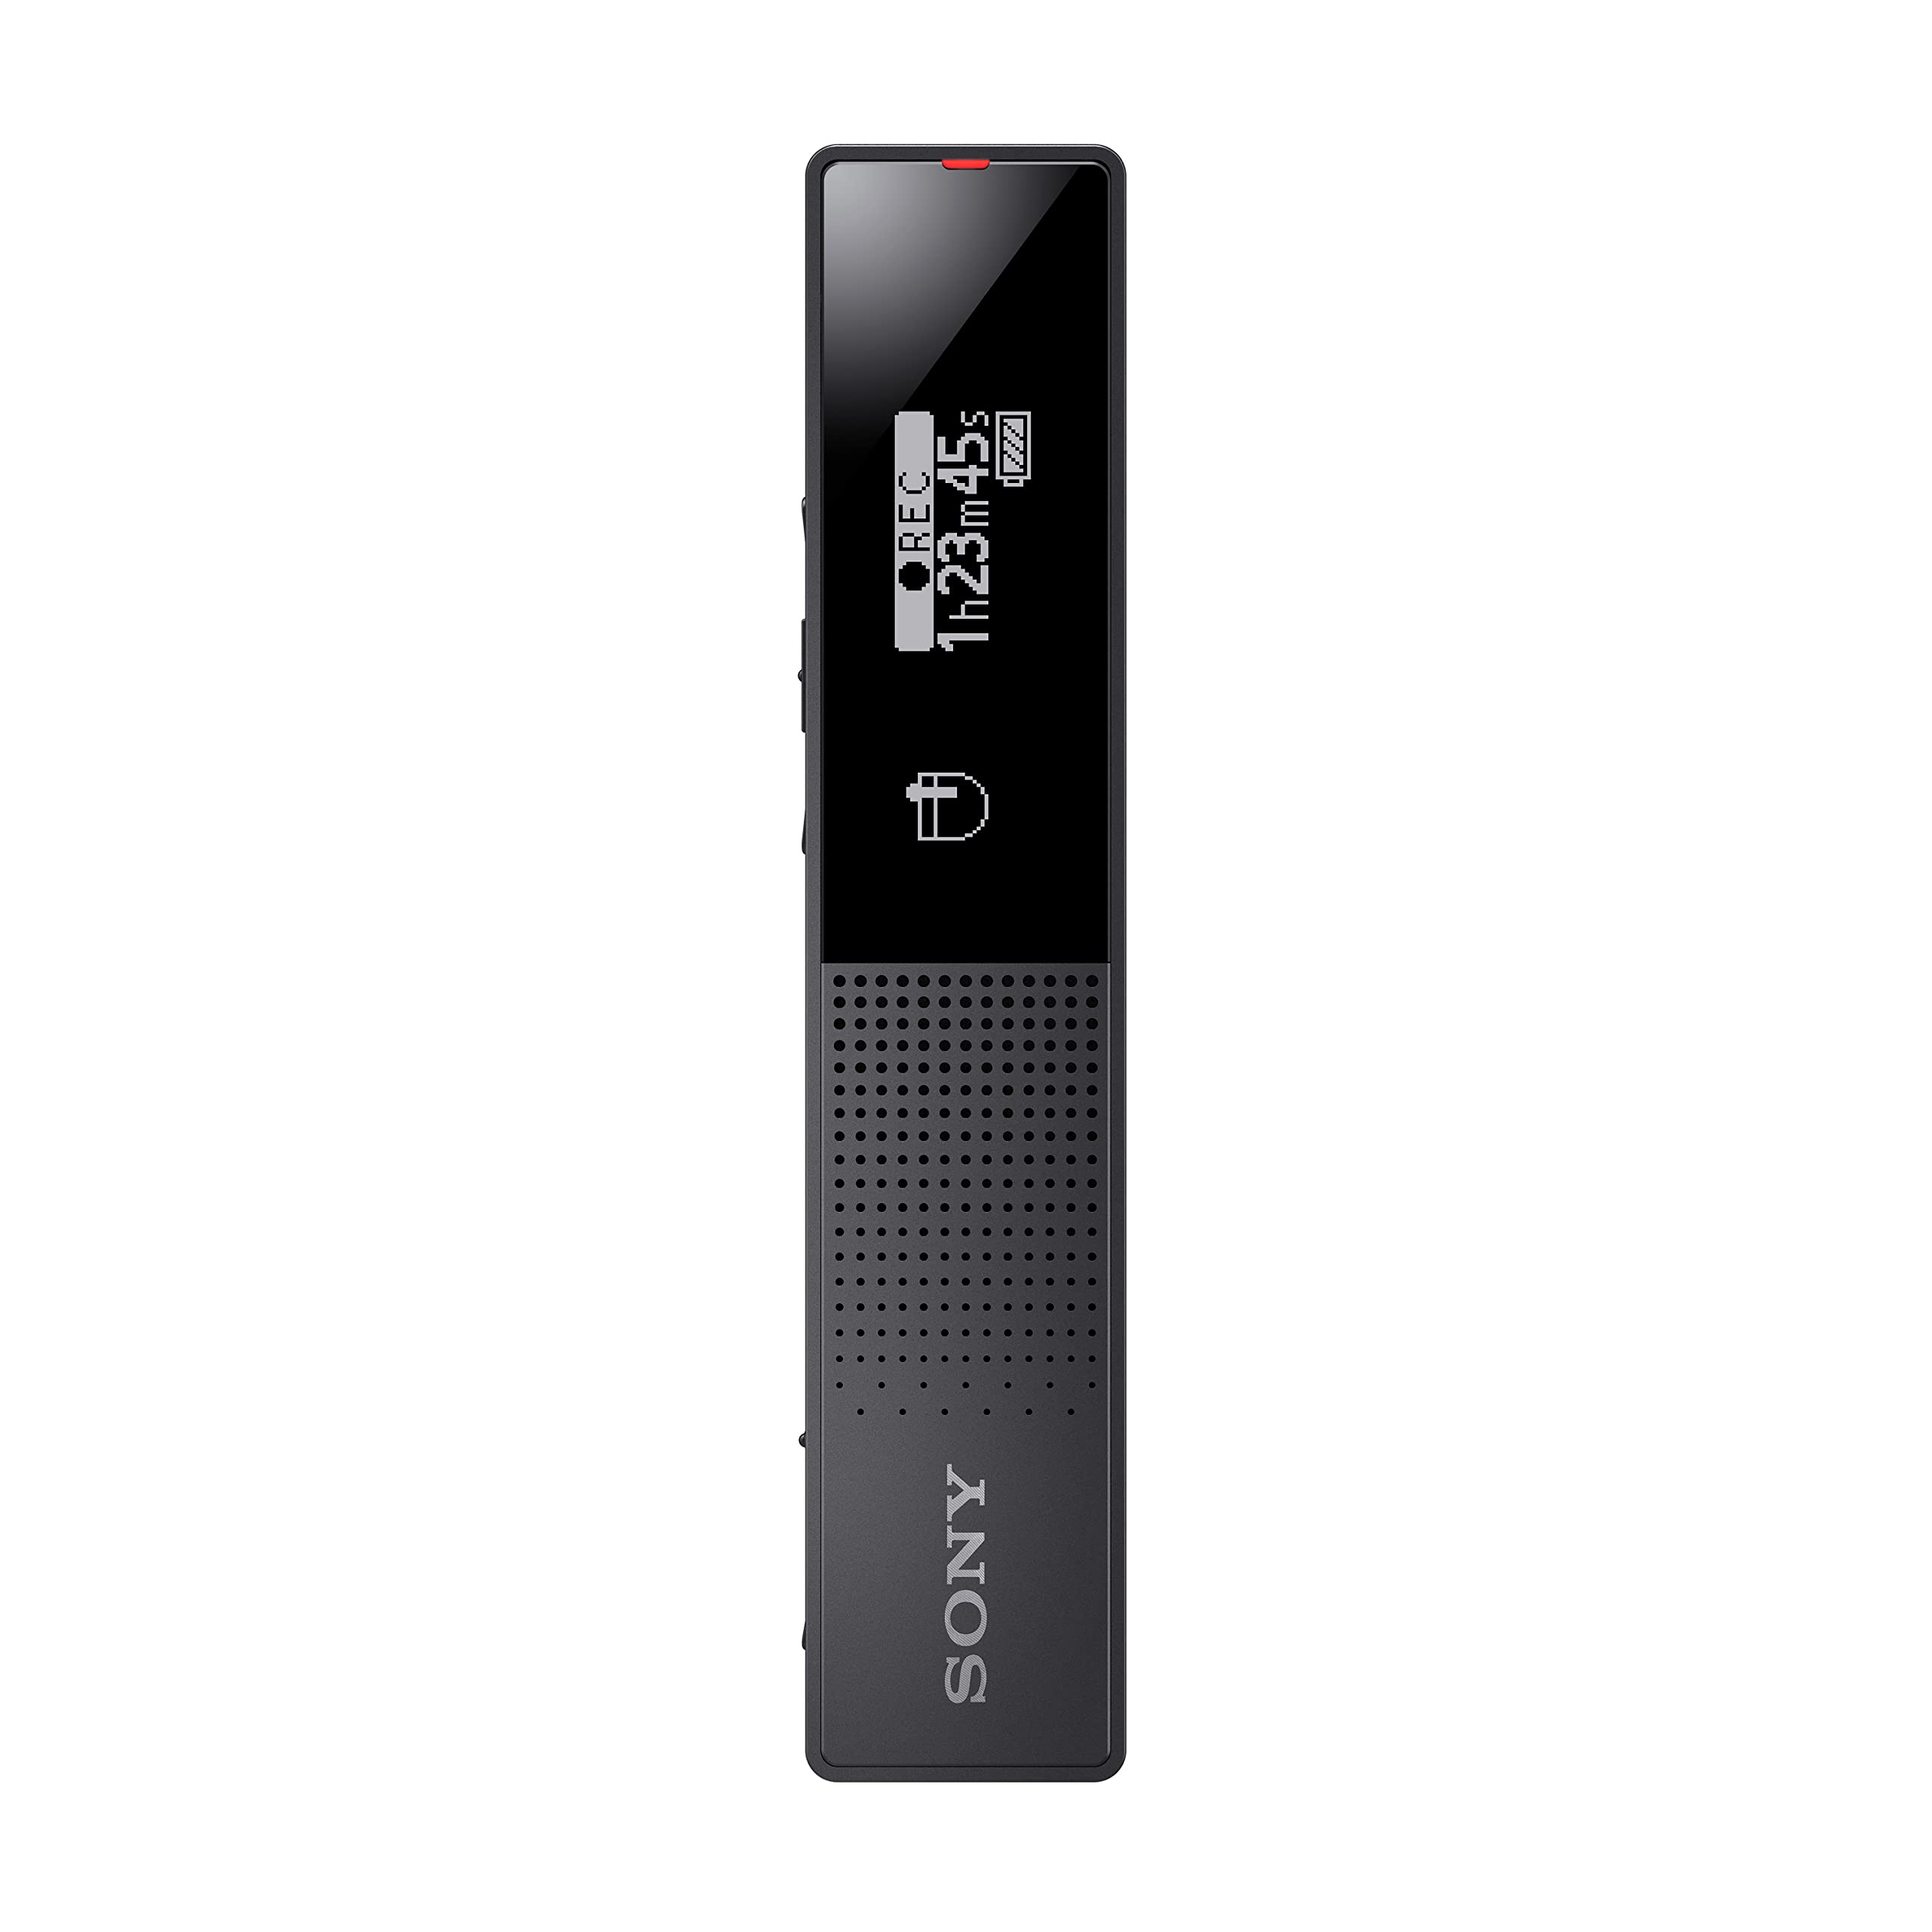 Sony ICD-TX660 - Enregistreur vocal numérique mince ave...